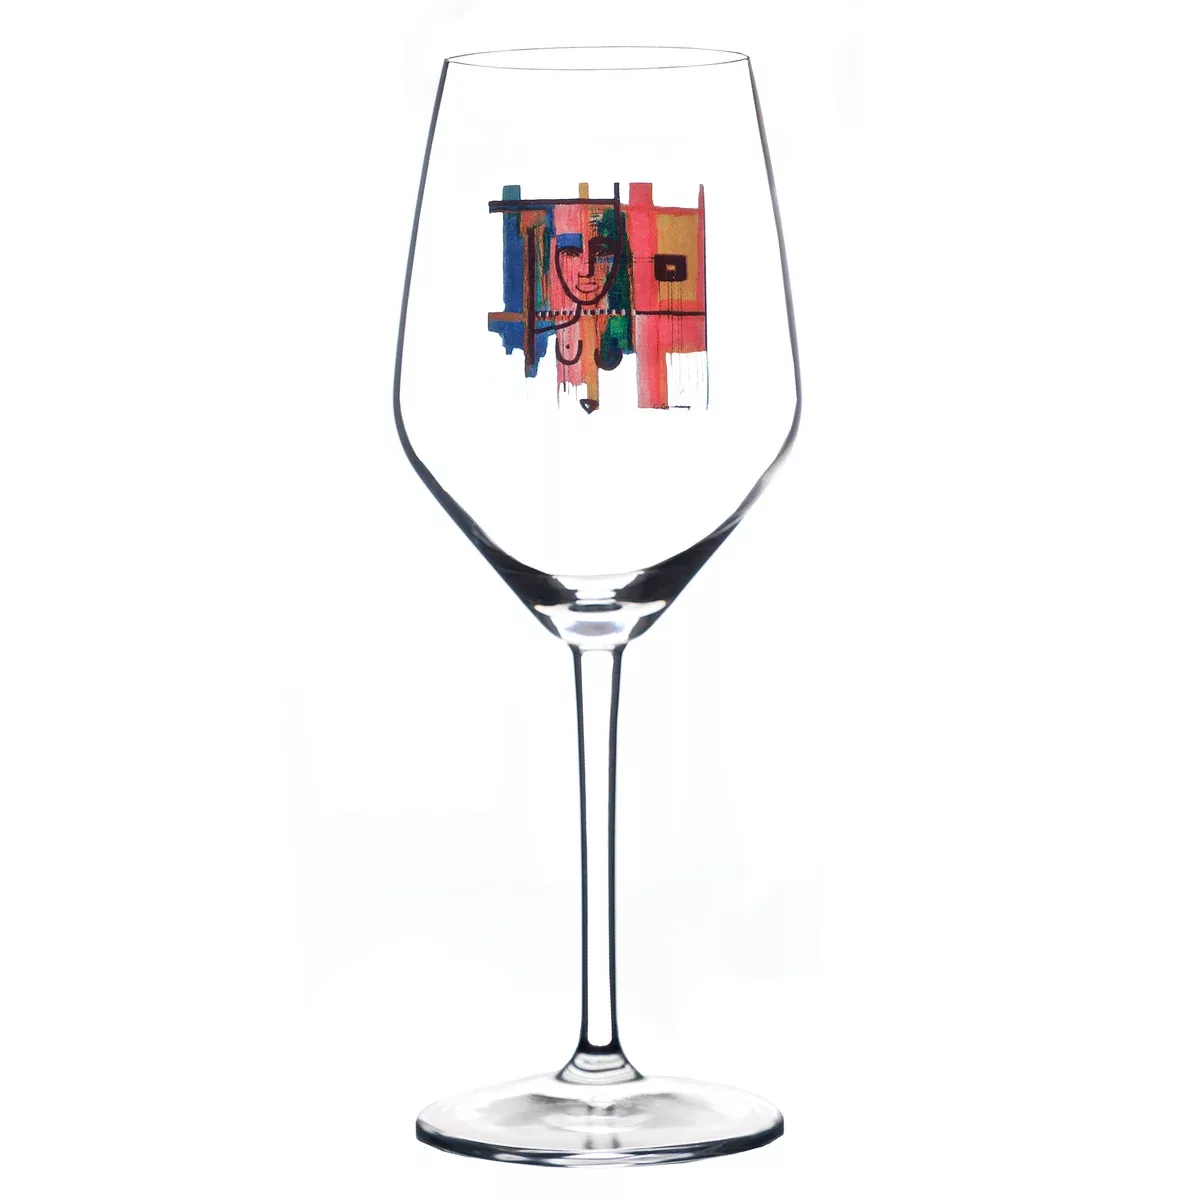 In Between Worlds Weinglas 75cl günstig online kaufen